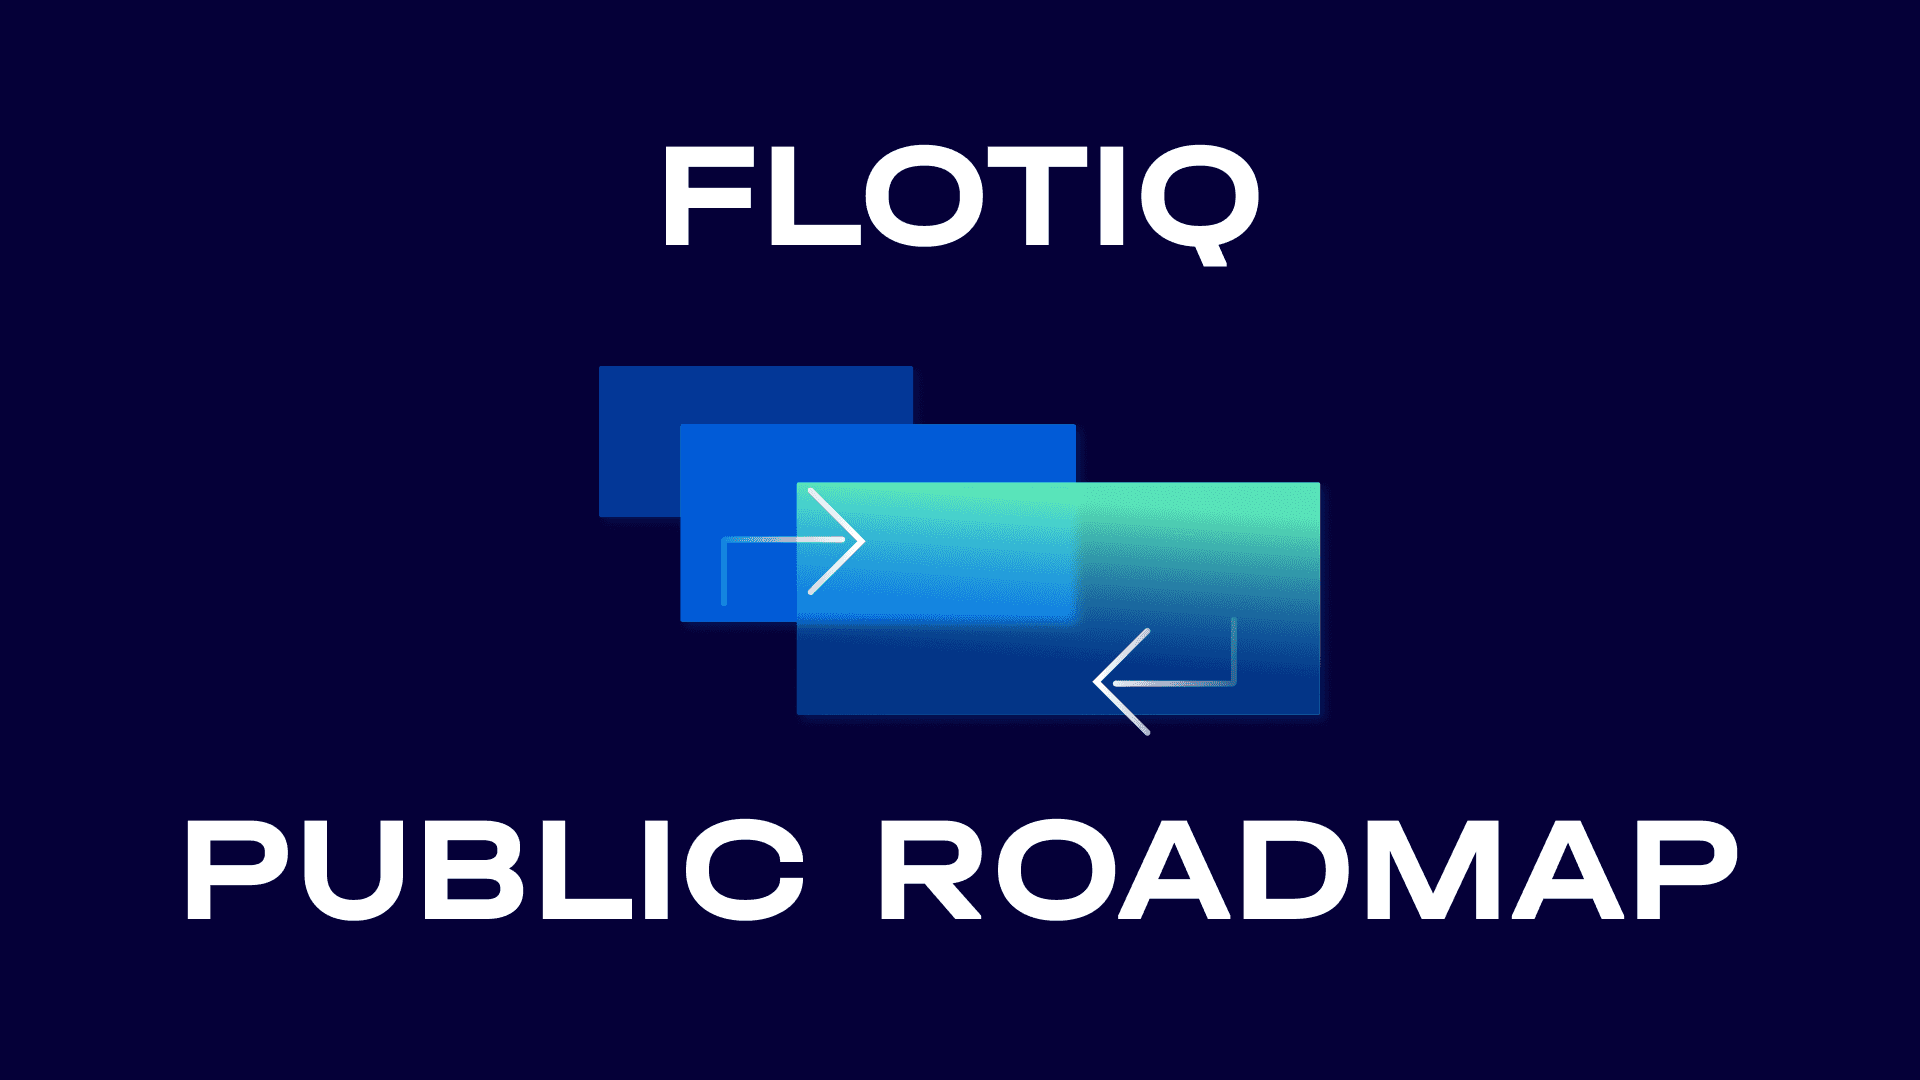 Flotiq public roadmap